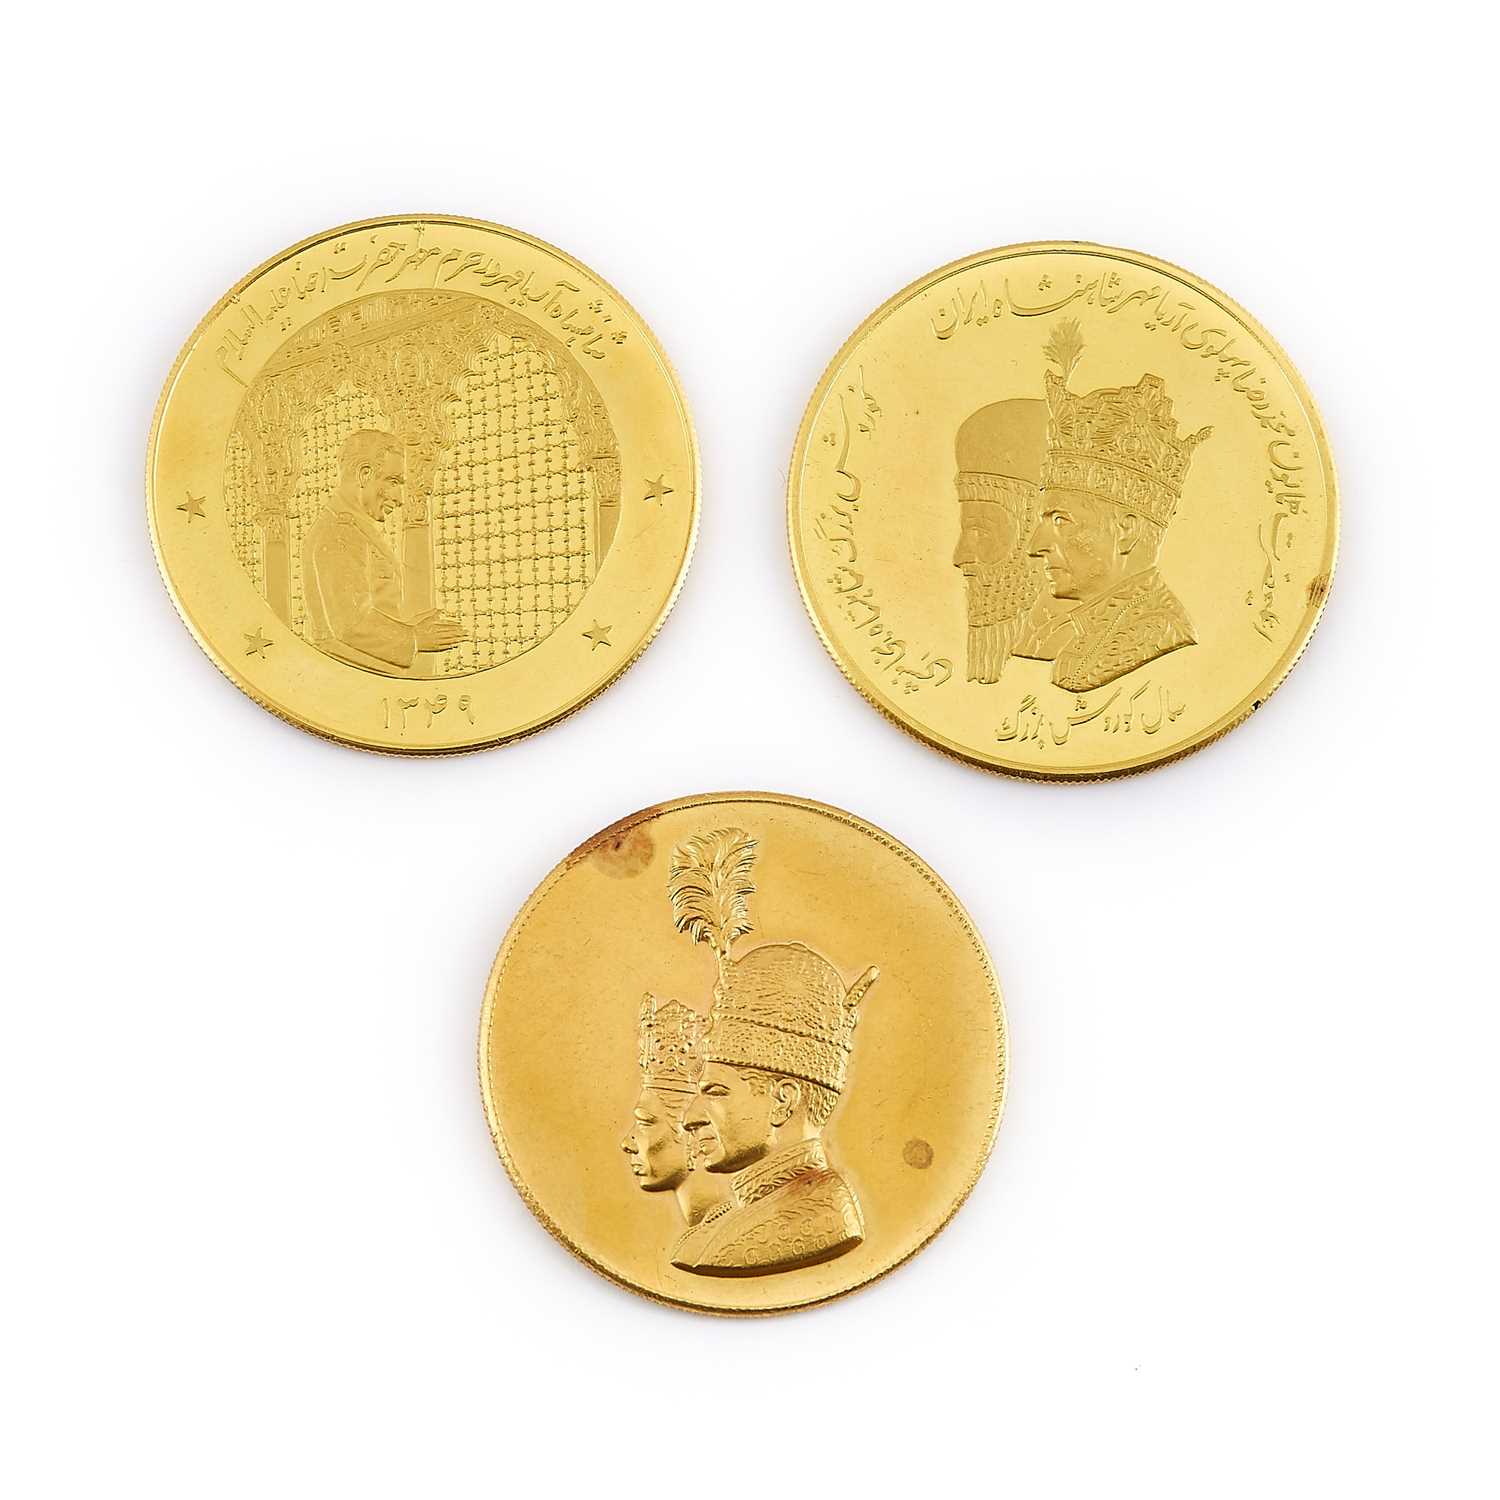 Lot 34 - Iran Gold Medals